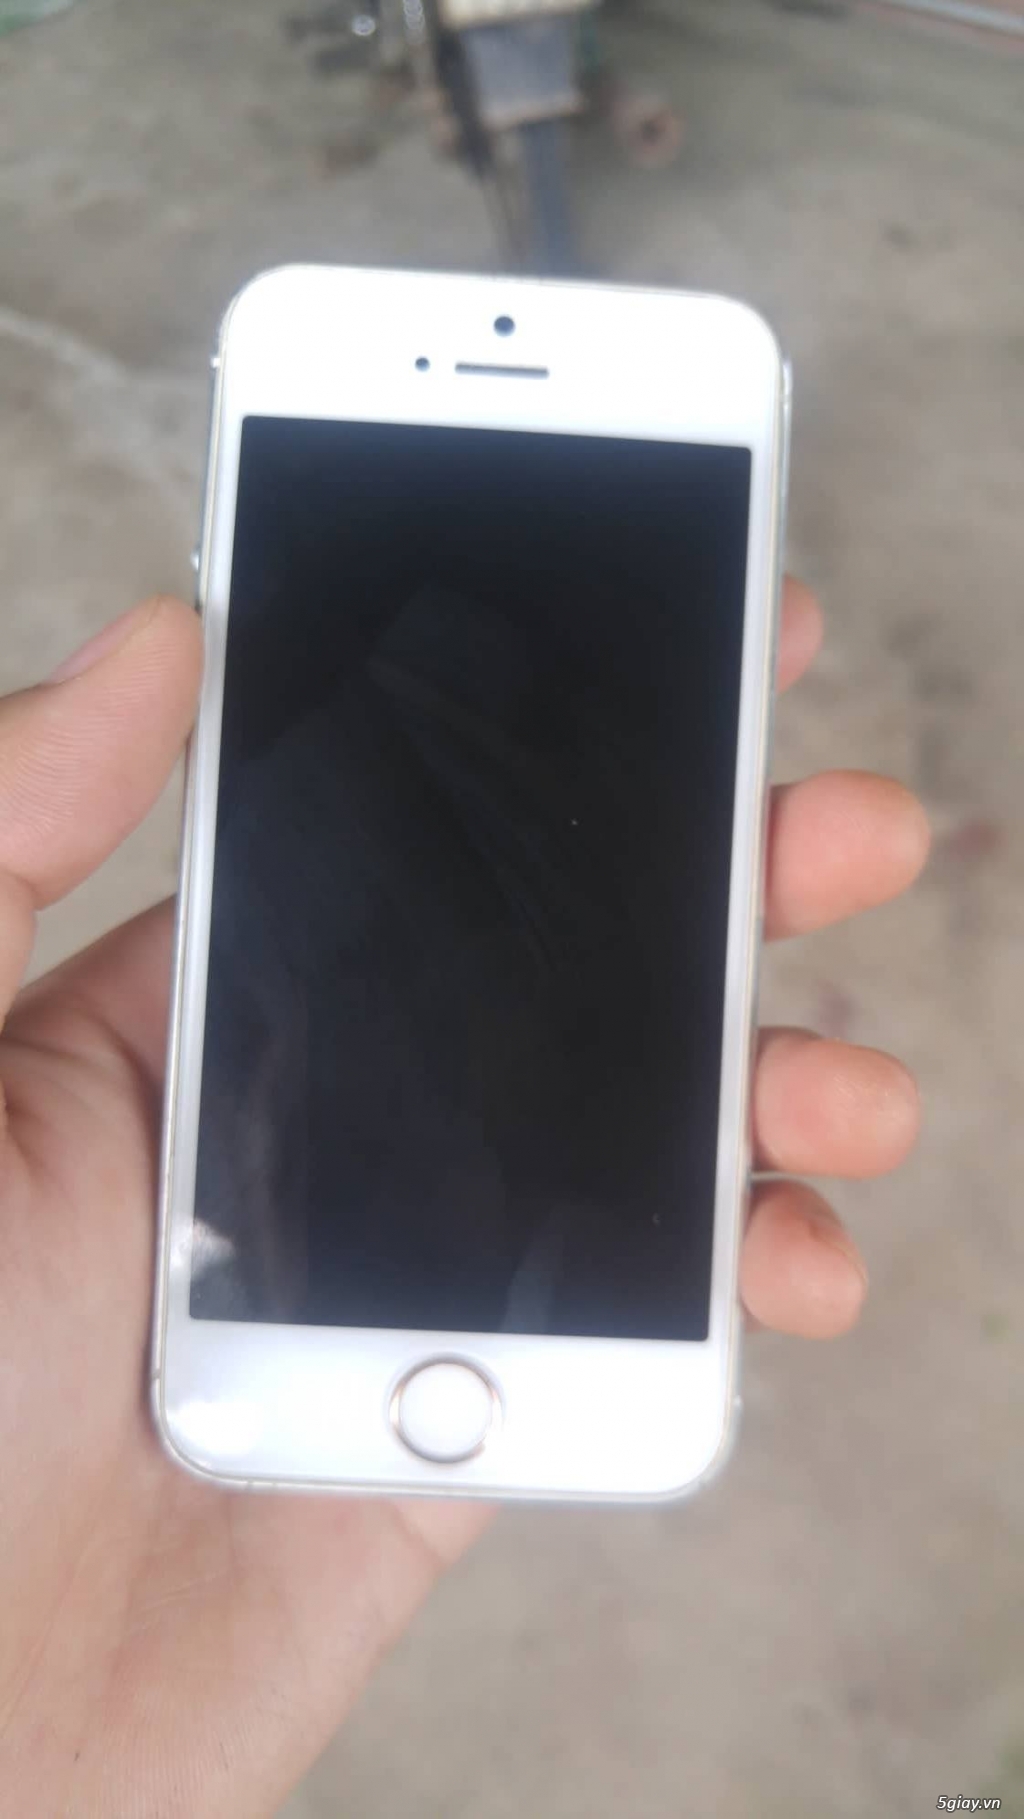 Iphone 5 lock nhật 32G trắng, ngoại hình ok - 2